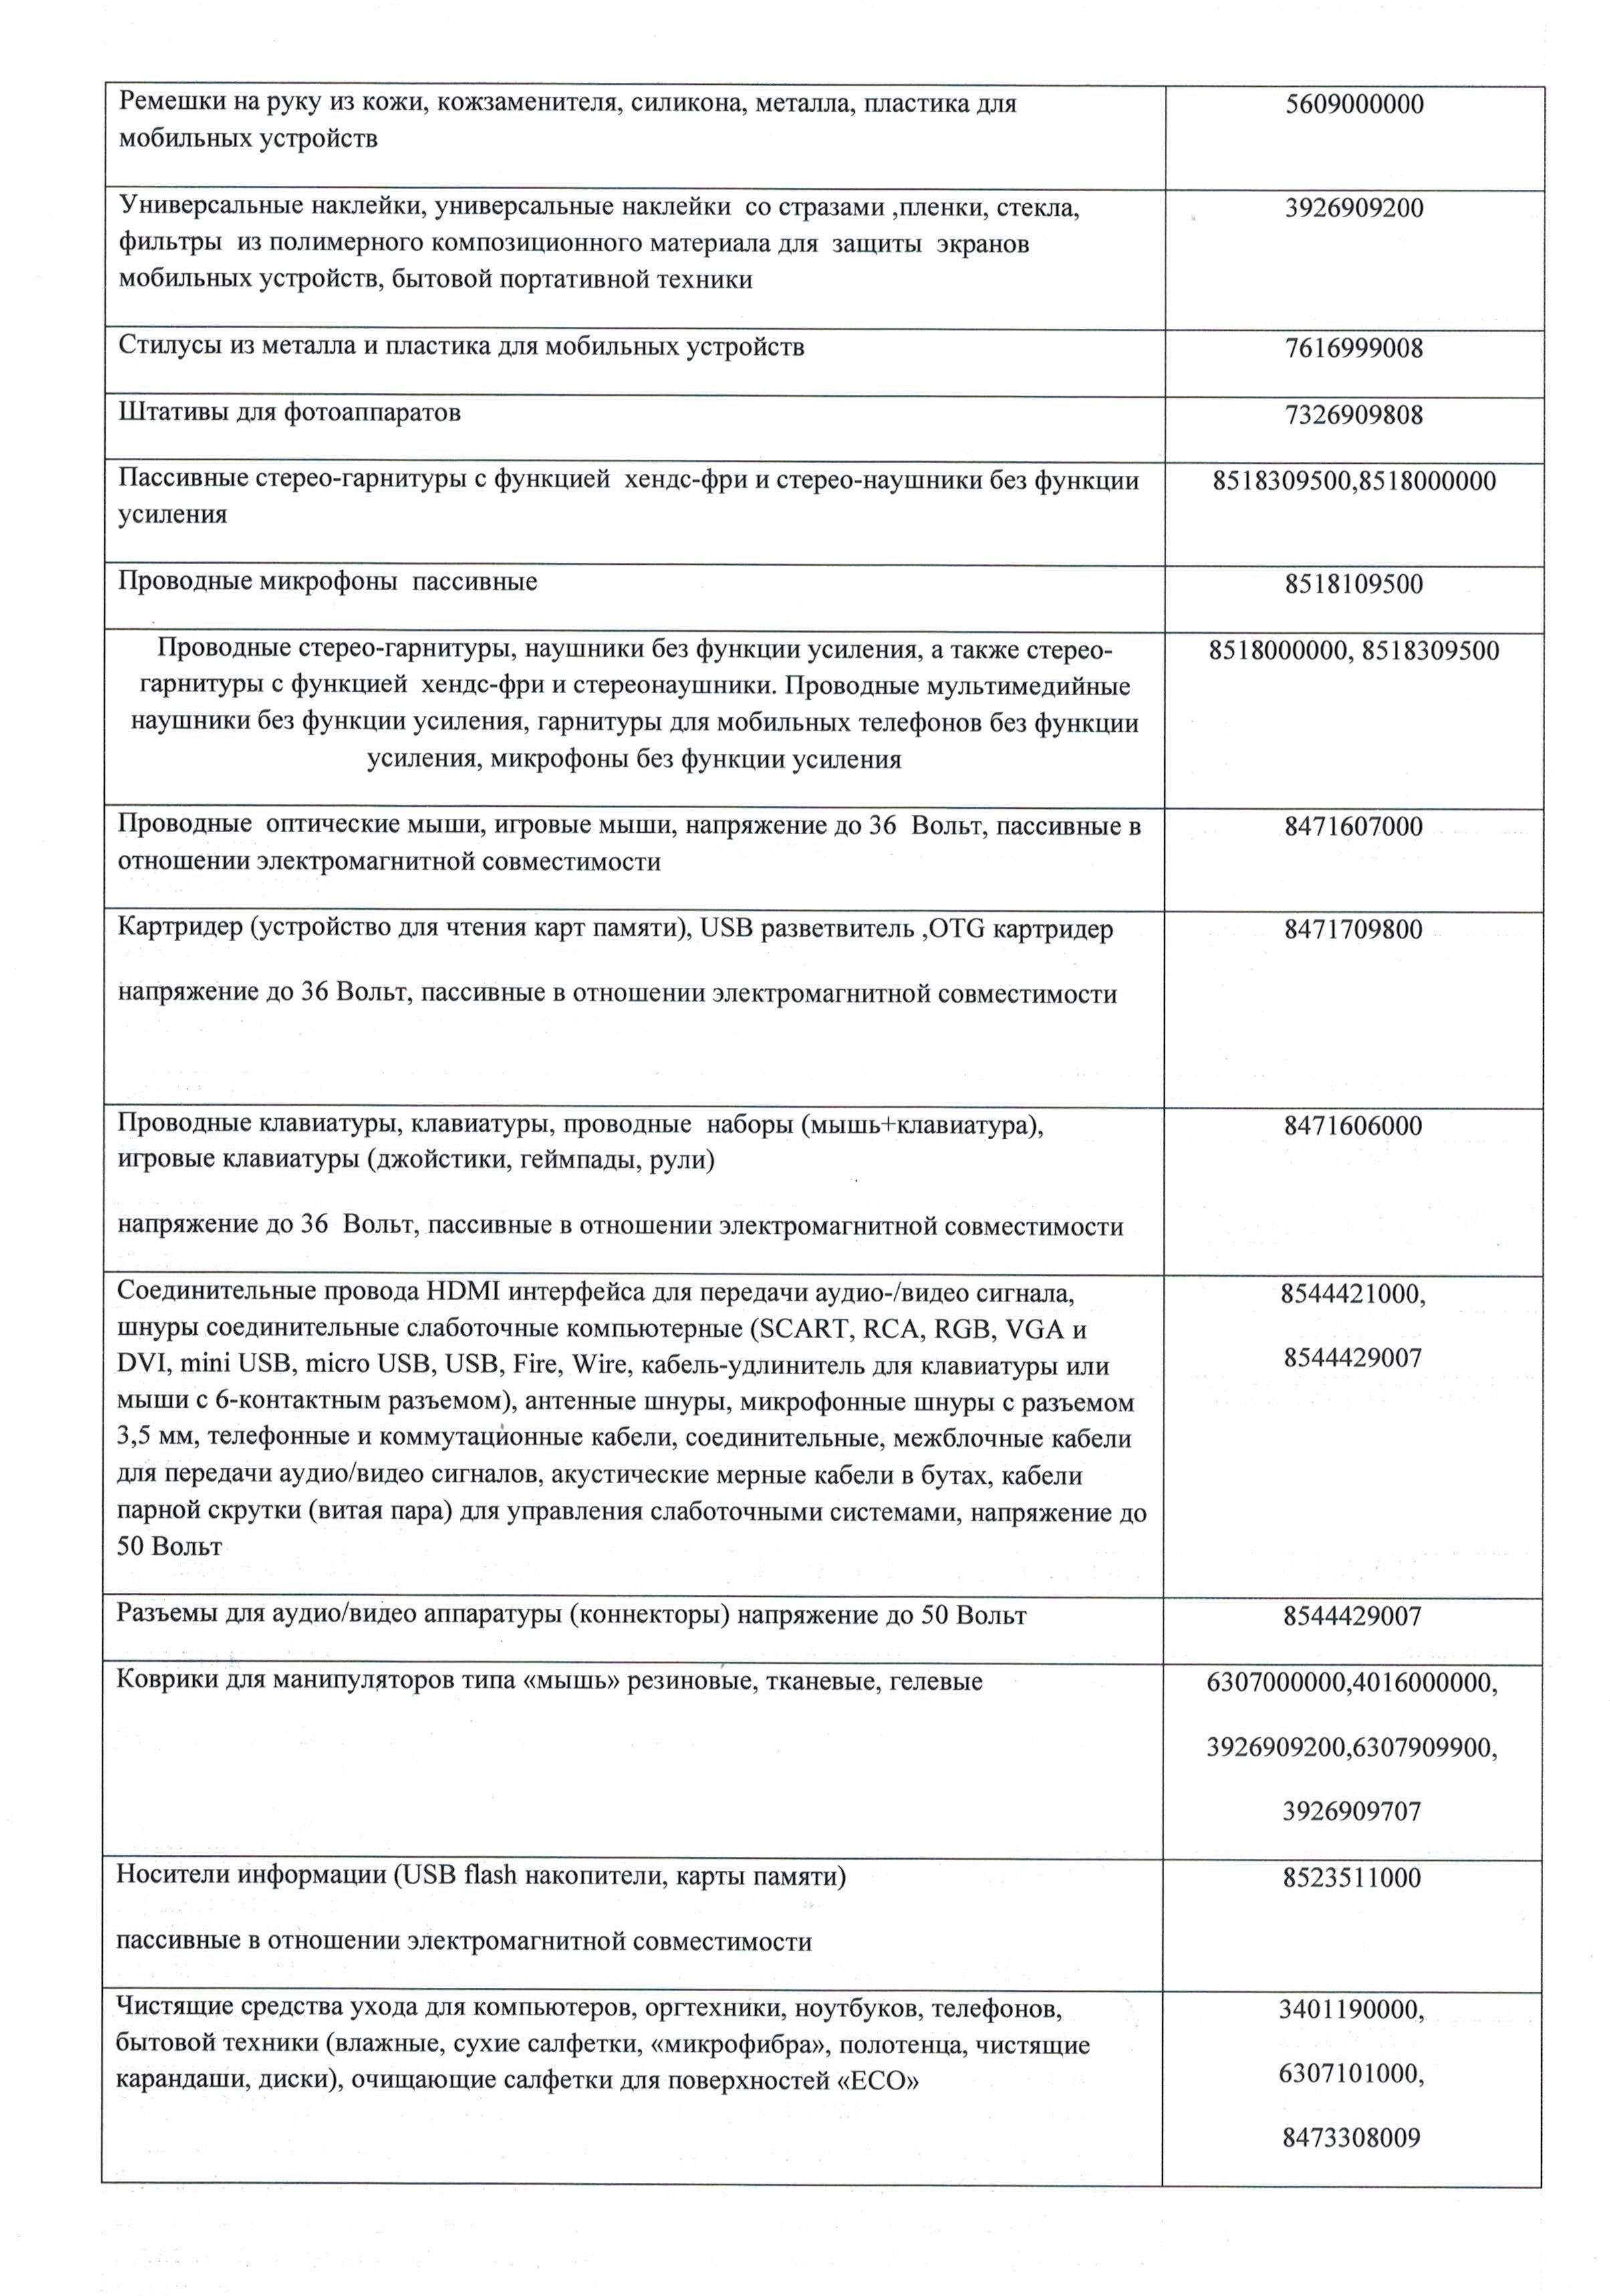 Отказное письмо аксессуары для мобильных устройств 28.01.2020г (2)-1